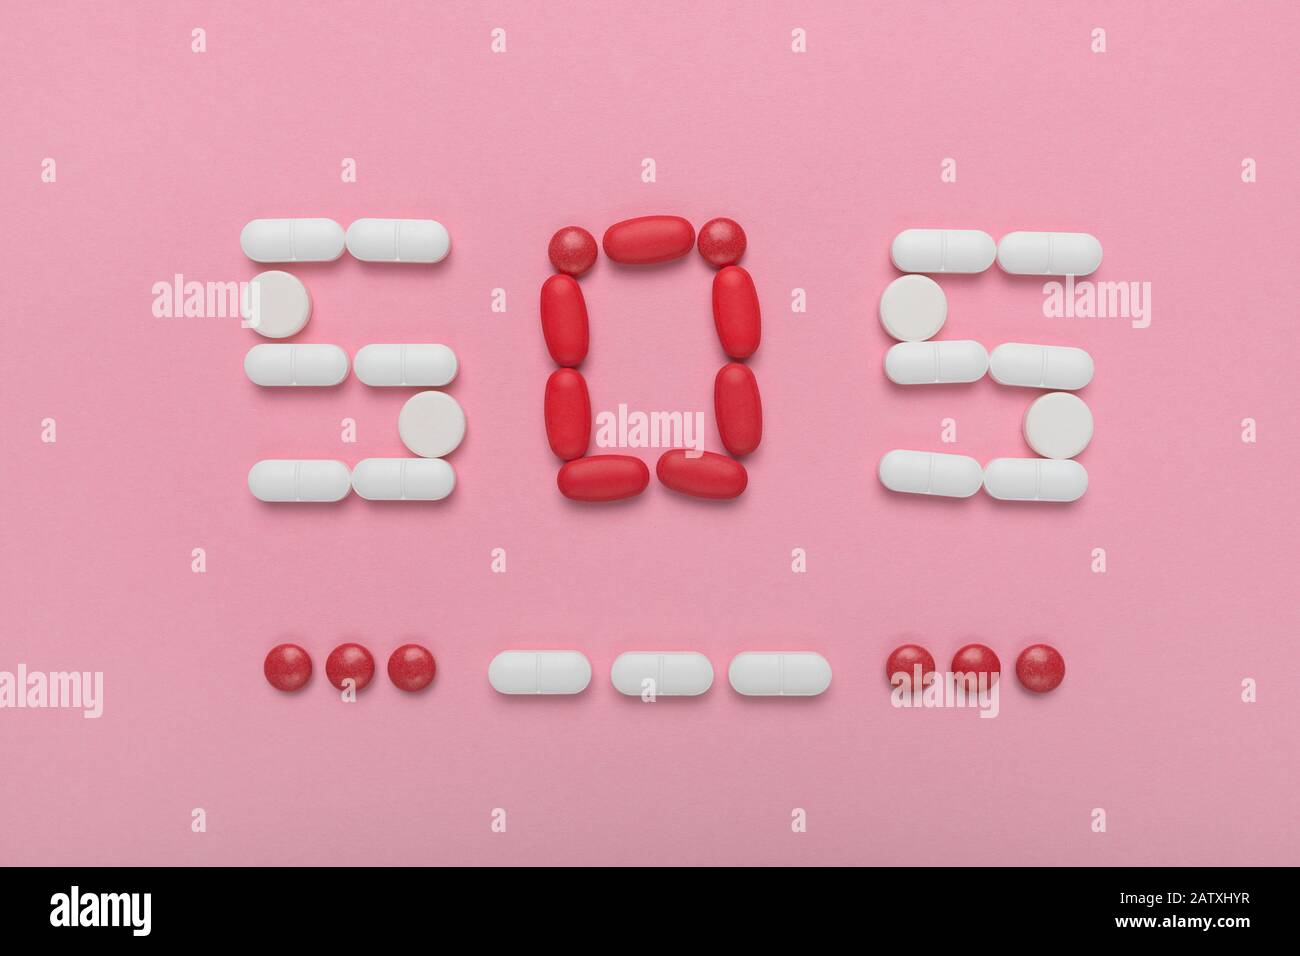 SOS en morse avec les médicaments et les pilules, vue du dessus de l'image conceptuelle mise à plat de toxicomanie et l'abus de médicaments Banque D'Images